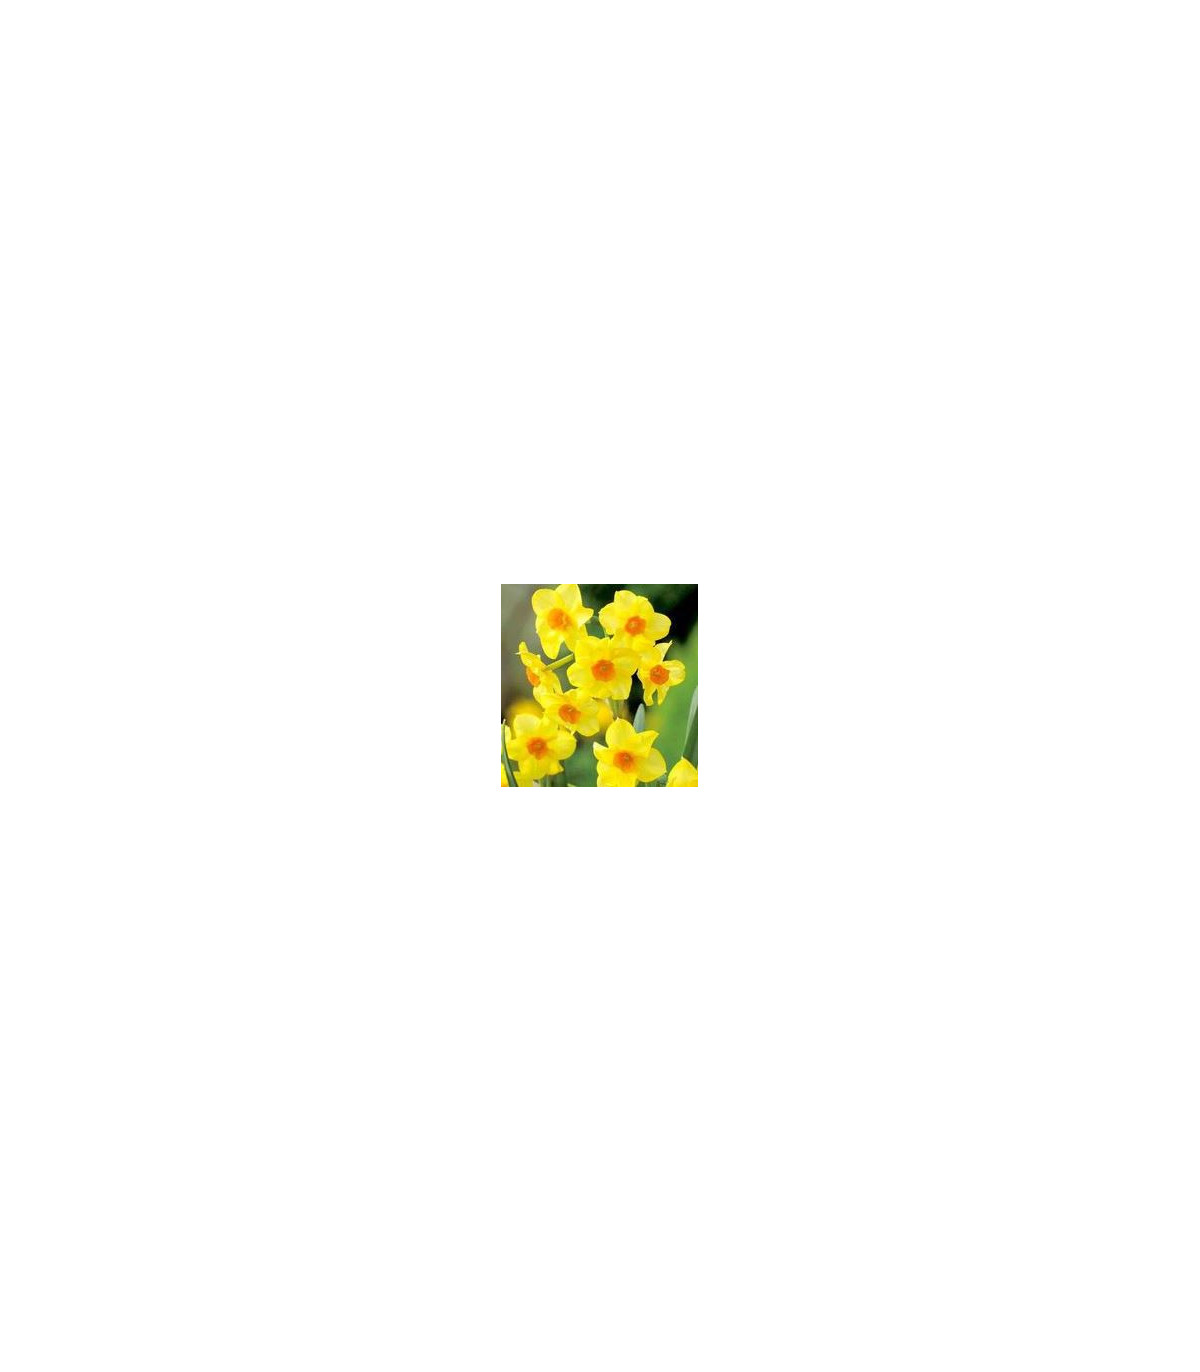 Narcis - Trelawney zlatý - predaj cibuľovín - 3 ks